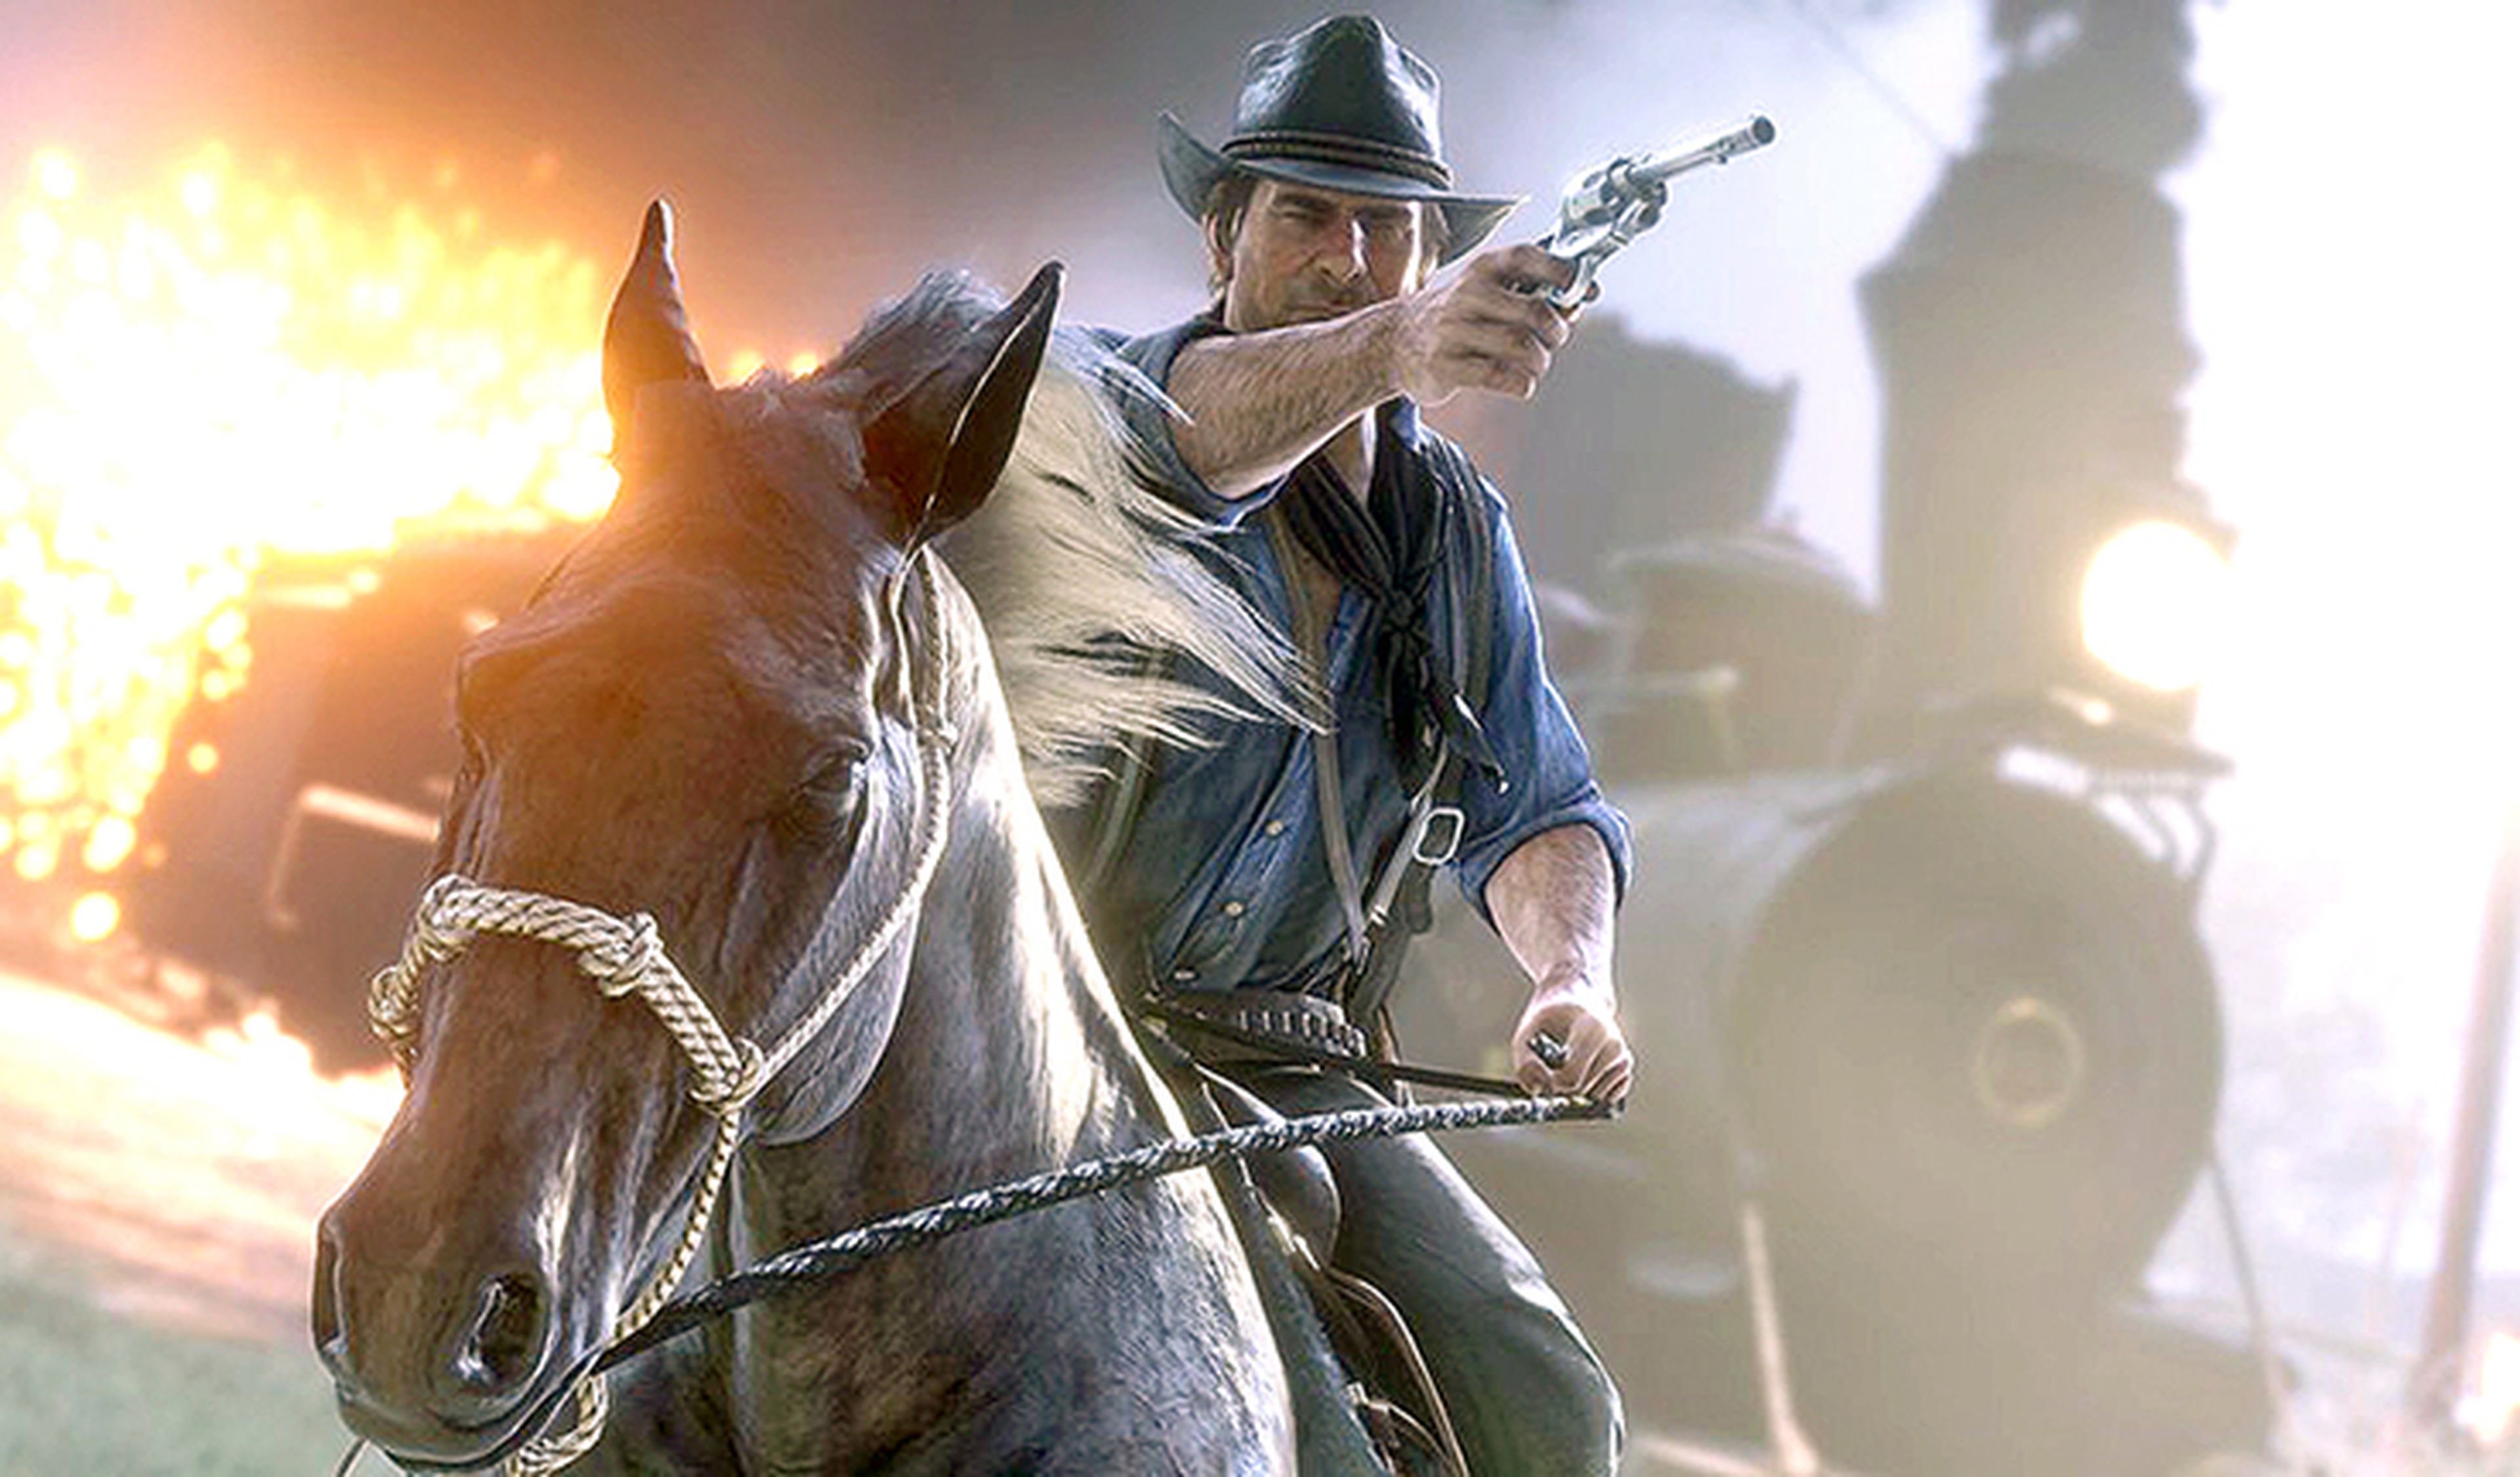 Análisis de Red Dead Redemption 2 para PS4 y Xbox One